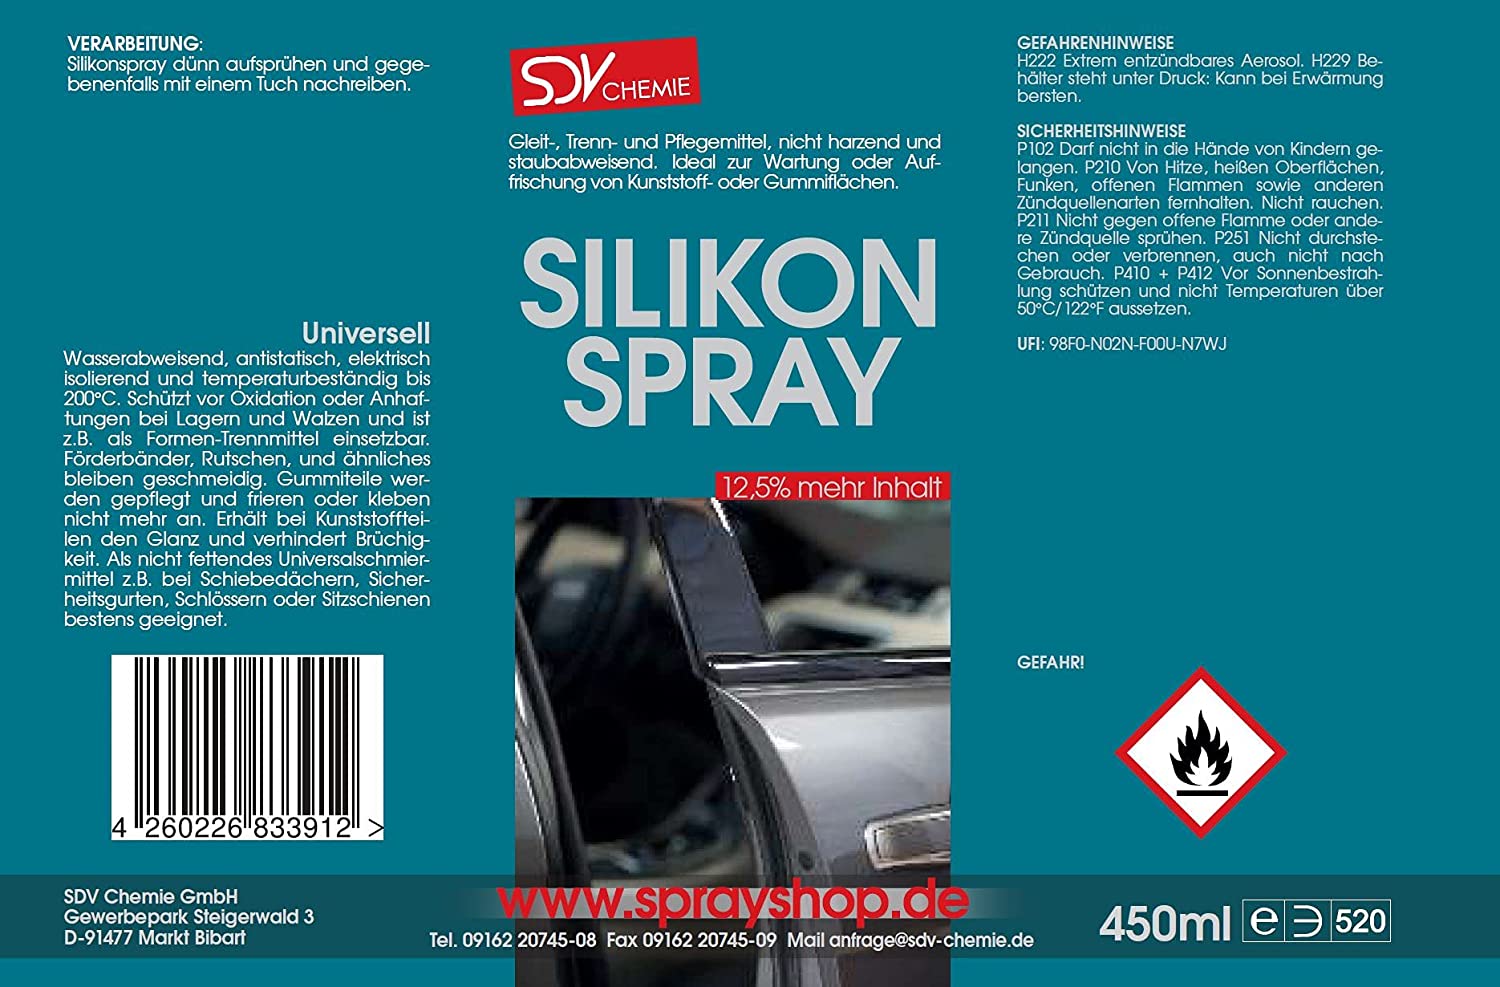 Sprayshop.de - SDV Chemie GmbH